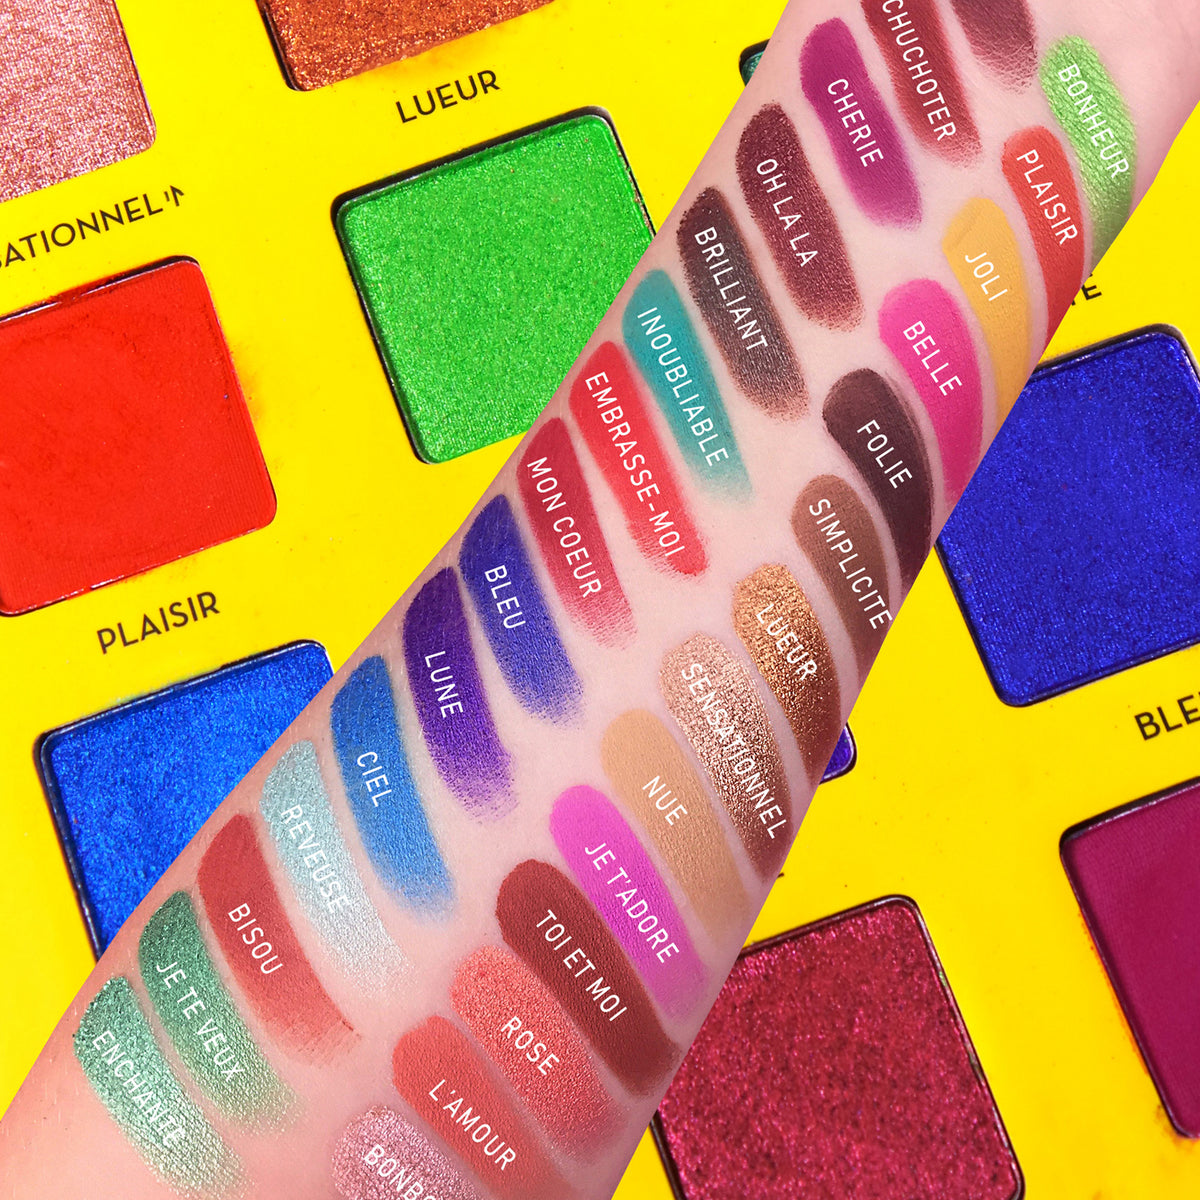 C'est Fantastique 30 Vivid Colors Eyeshadow Palette Swatch